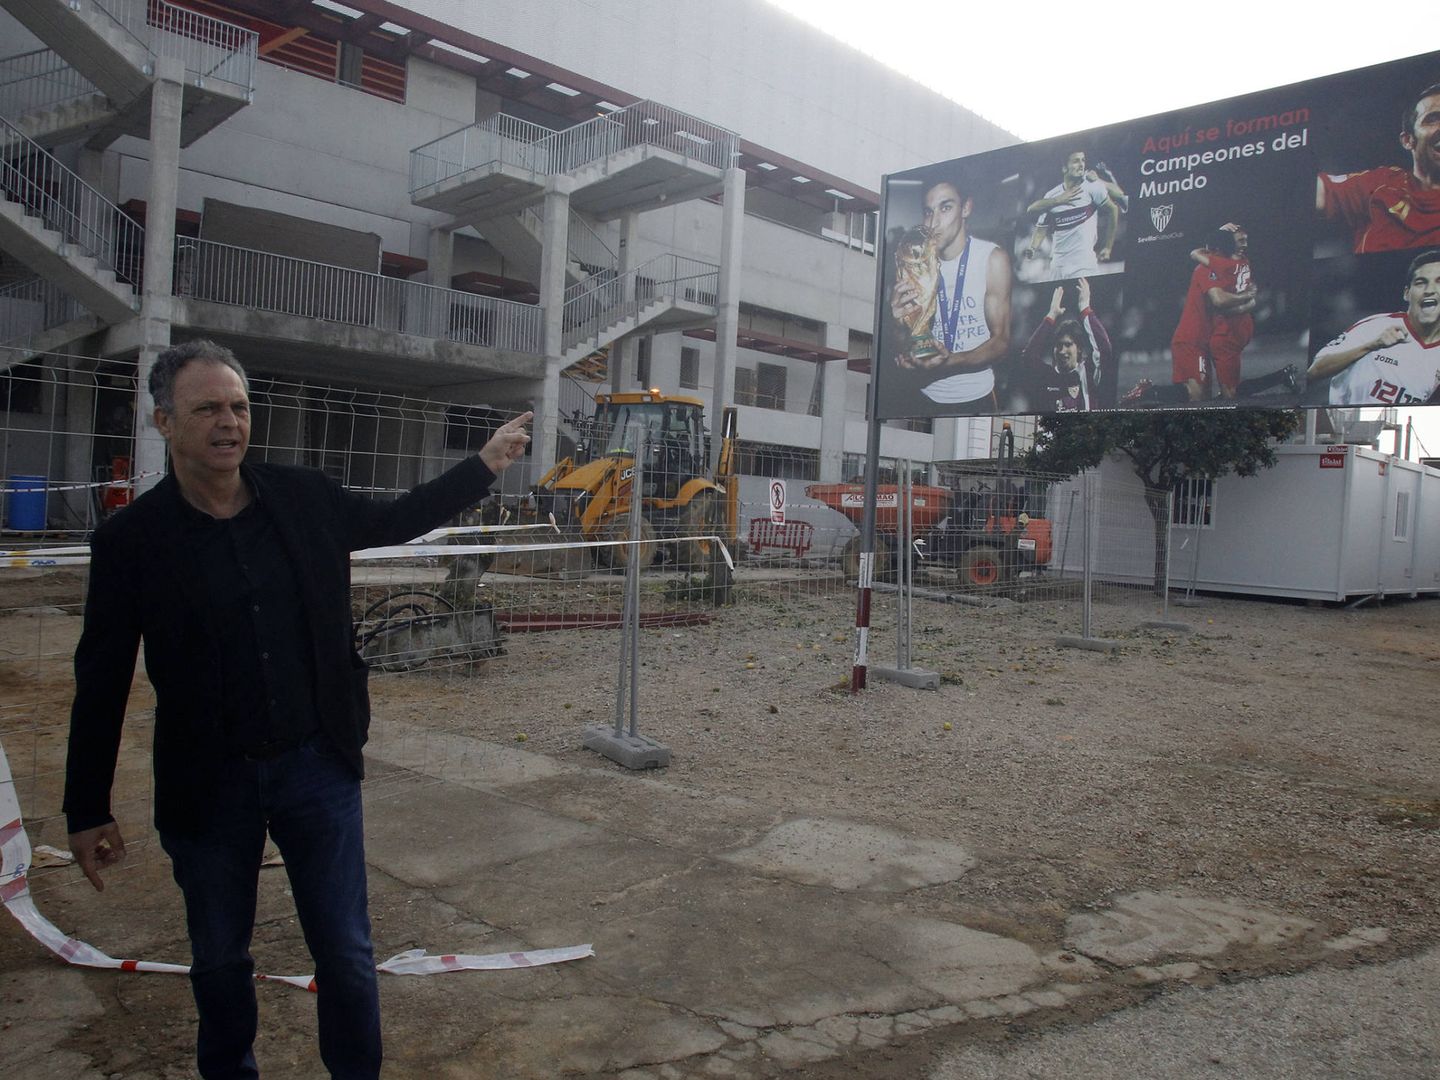 Caparrós señala el cartel que luce orgulloso el Sevilla a las puertas de su ciudad deportiva (SFC)